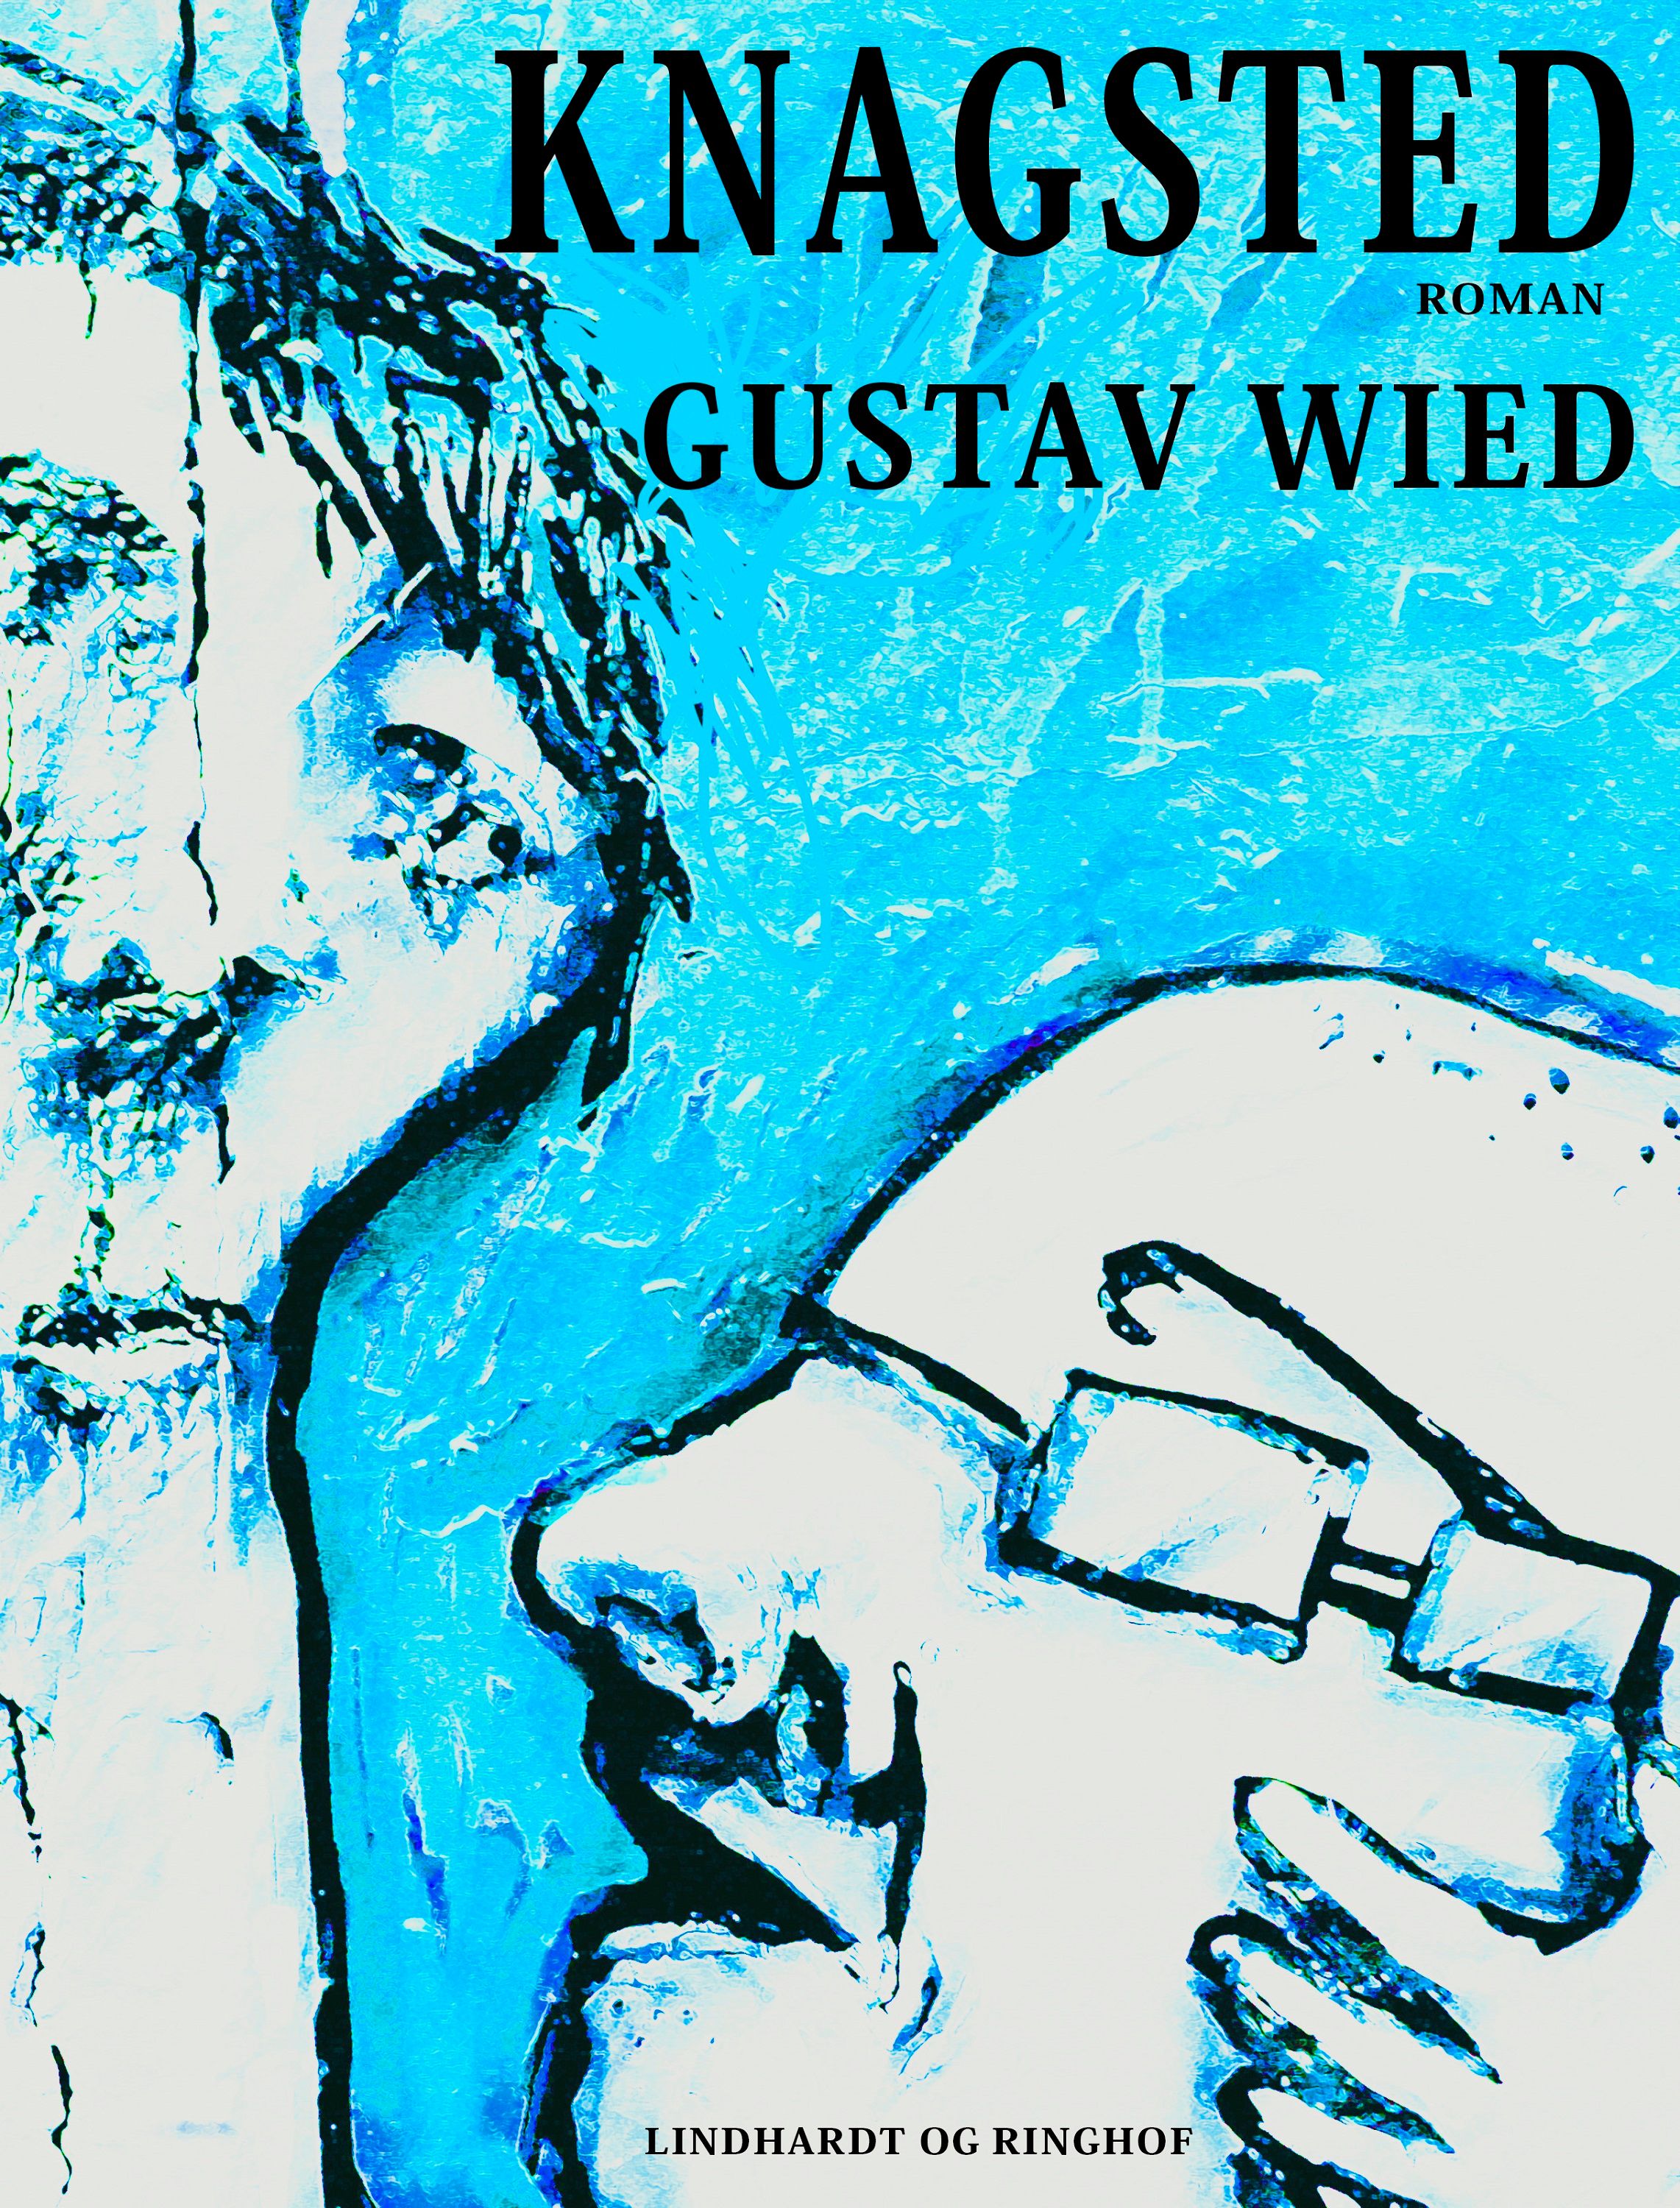 Knagsted, lydbog af Gustav Wied